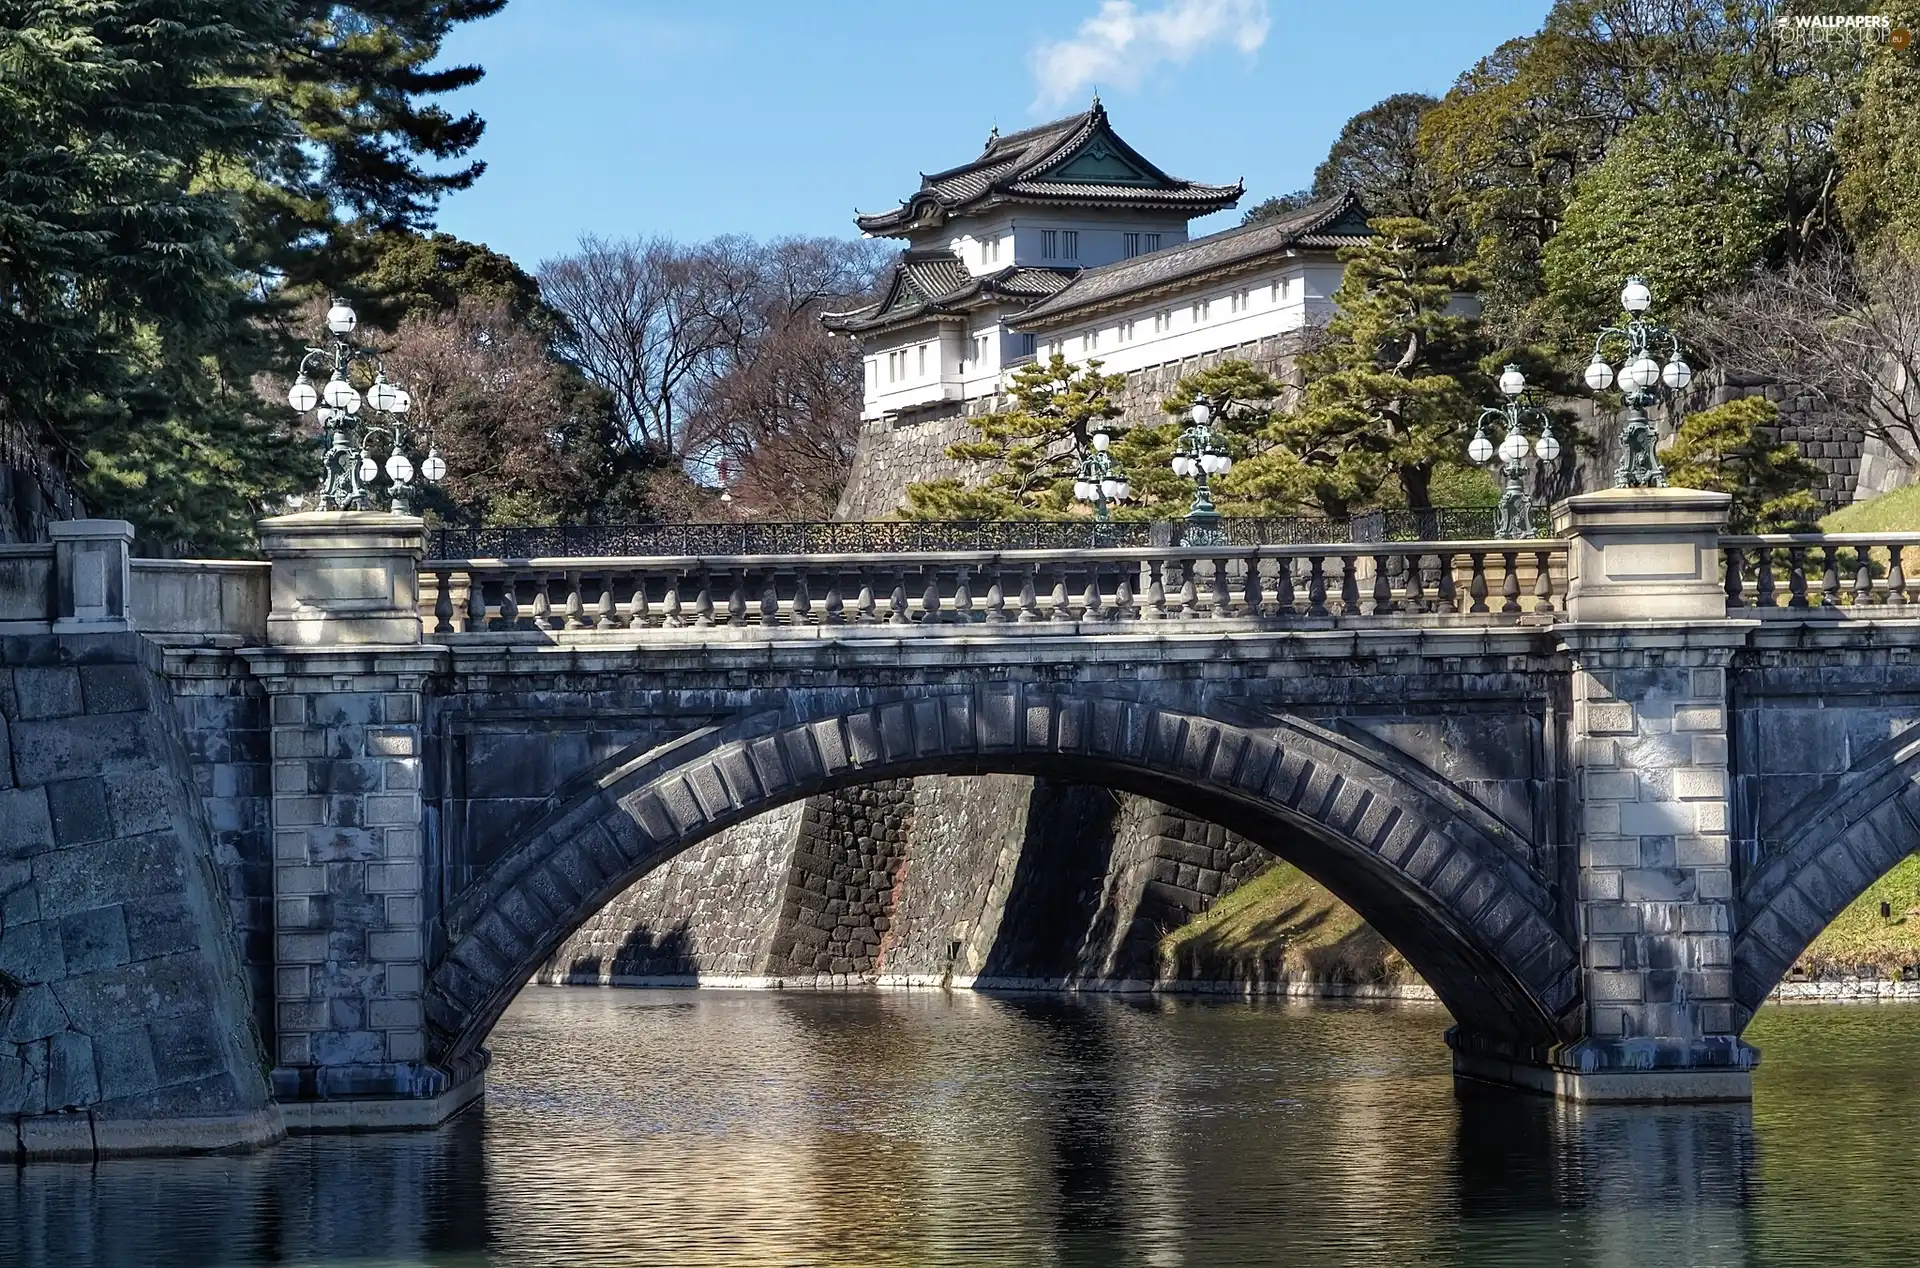 River, structures, Japan, bridge